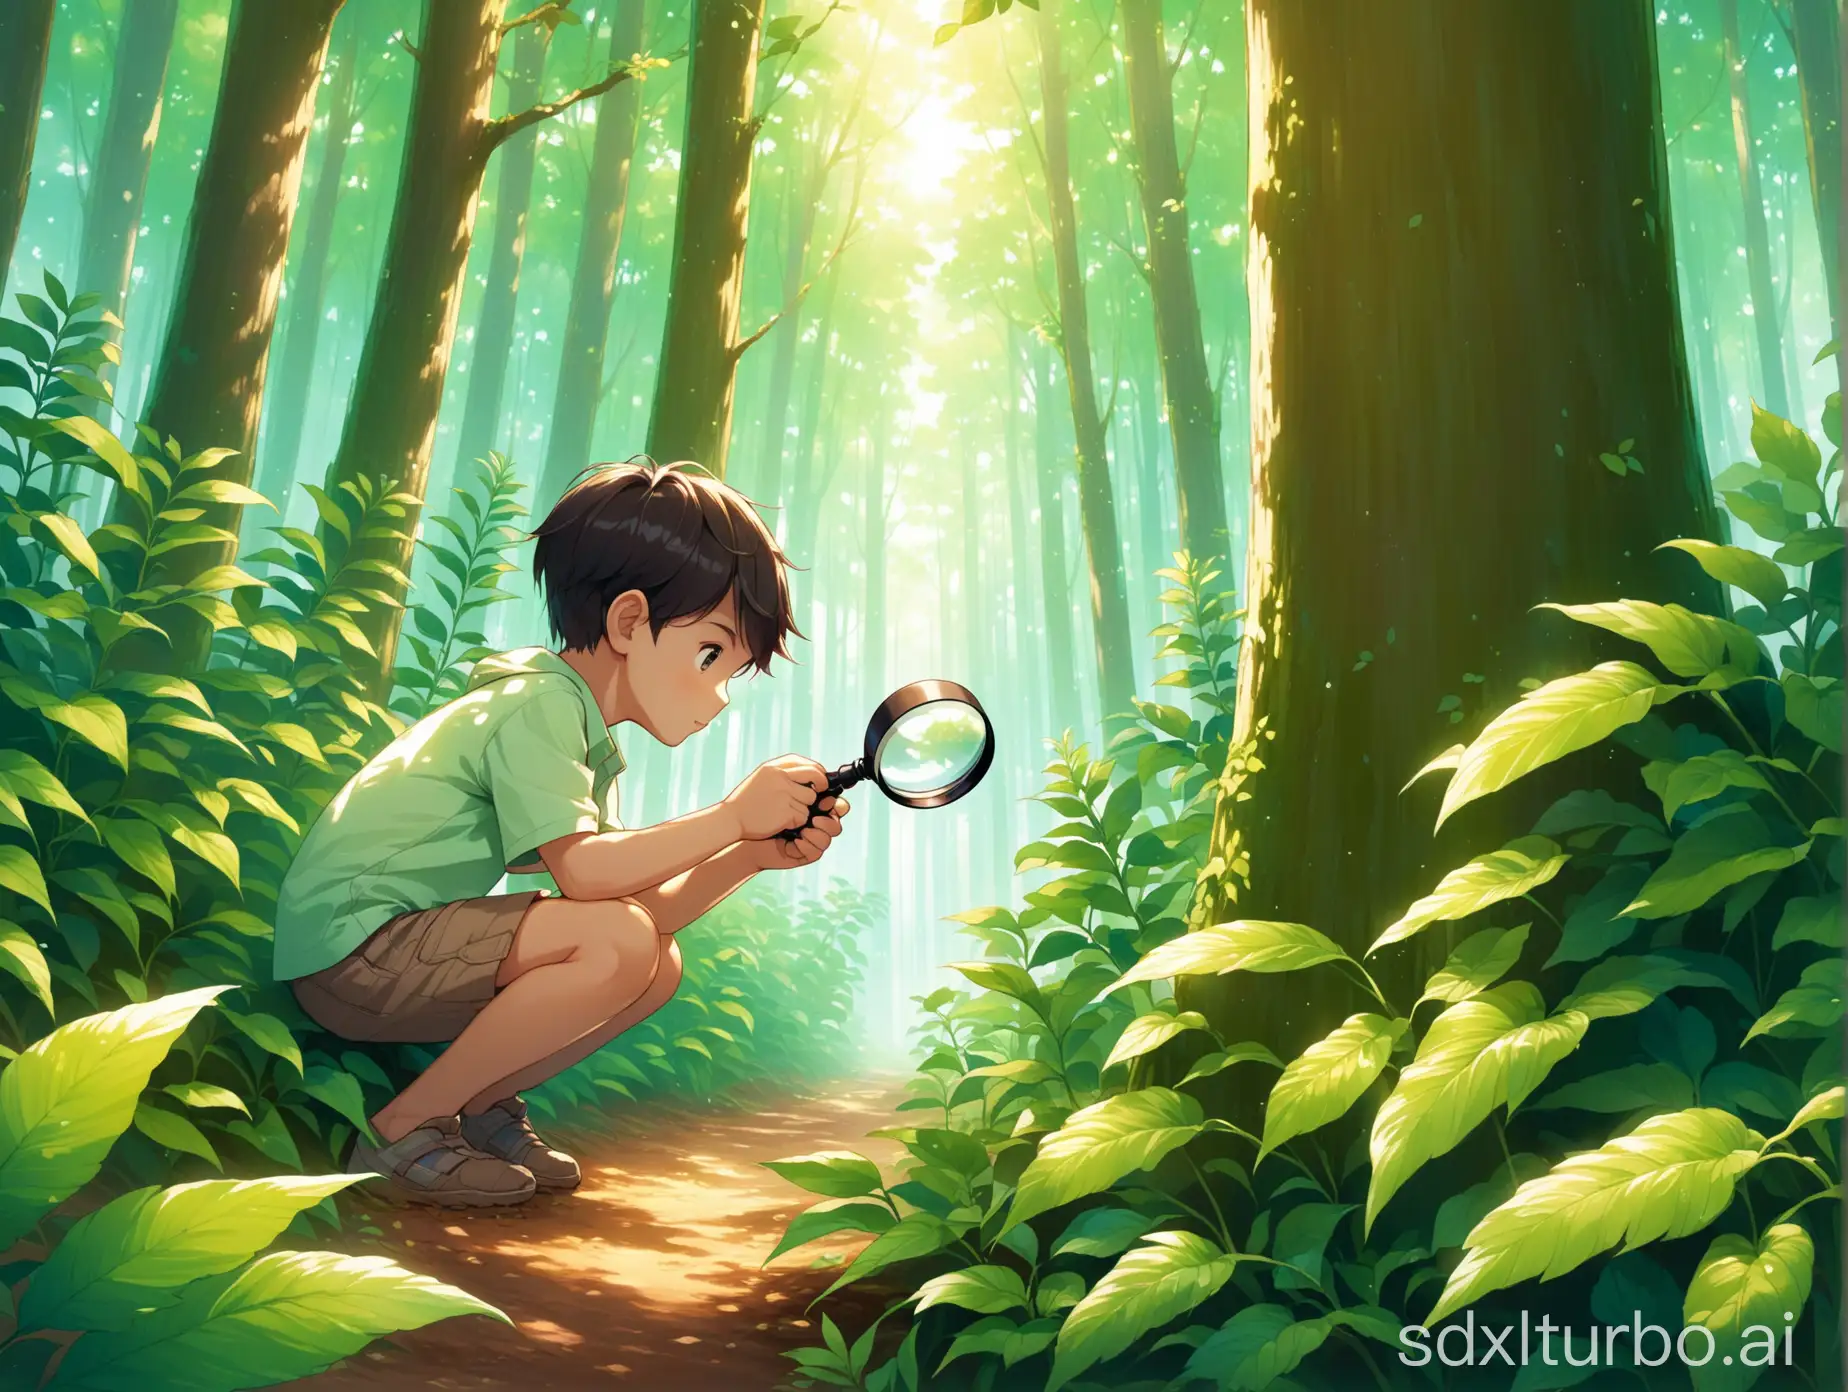 生成一张森林里，小男孩手持放大镜观察植物的照片



